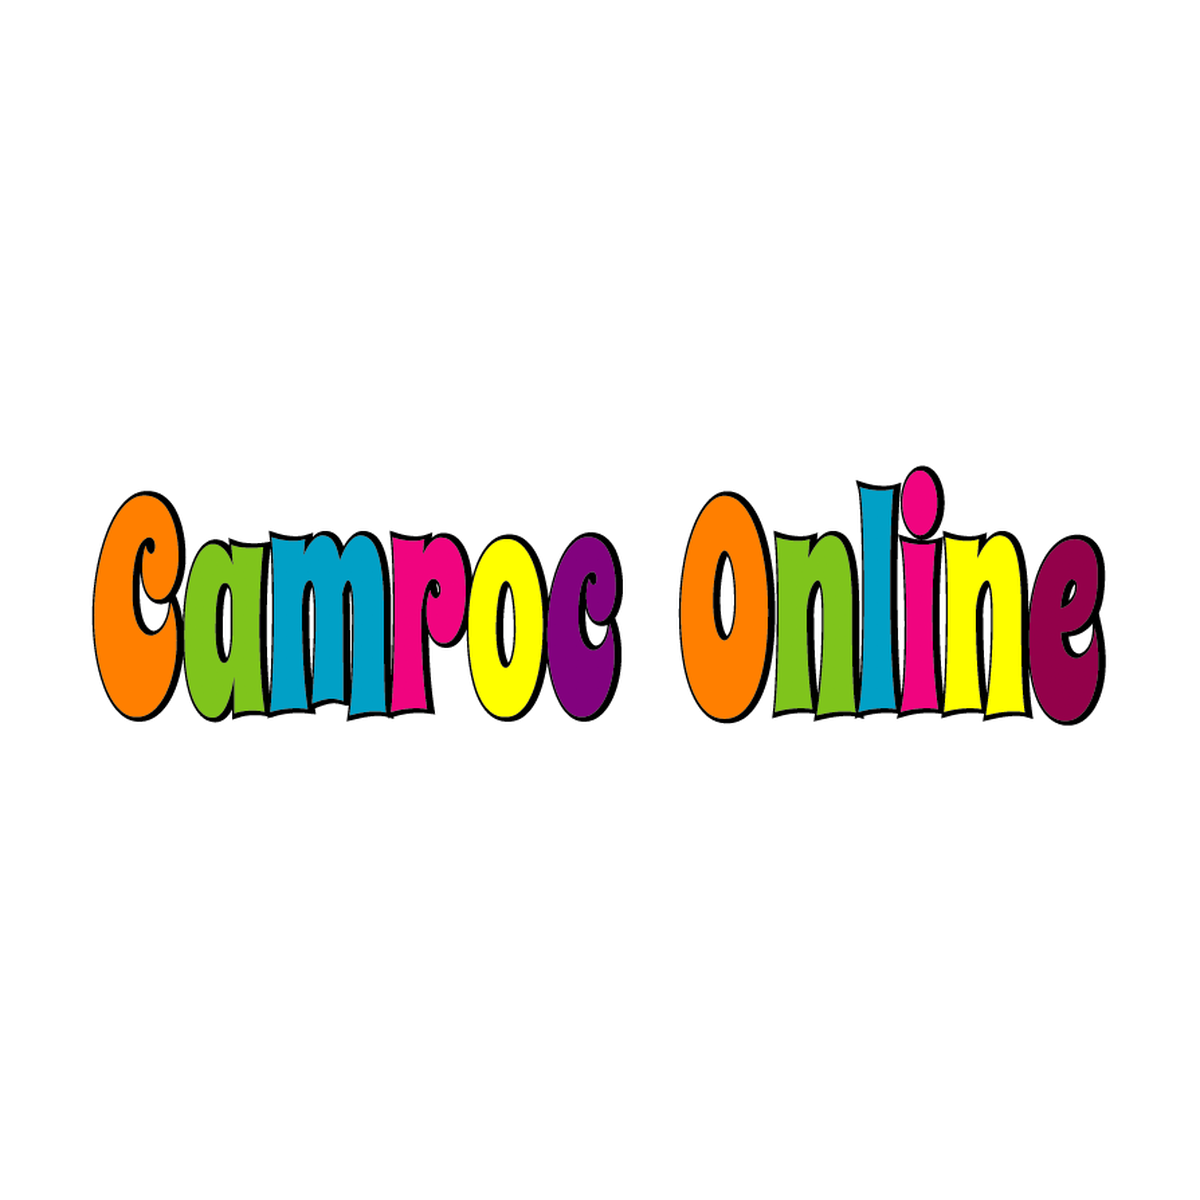 Camroc Online